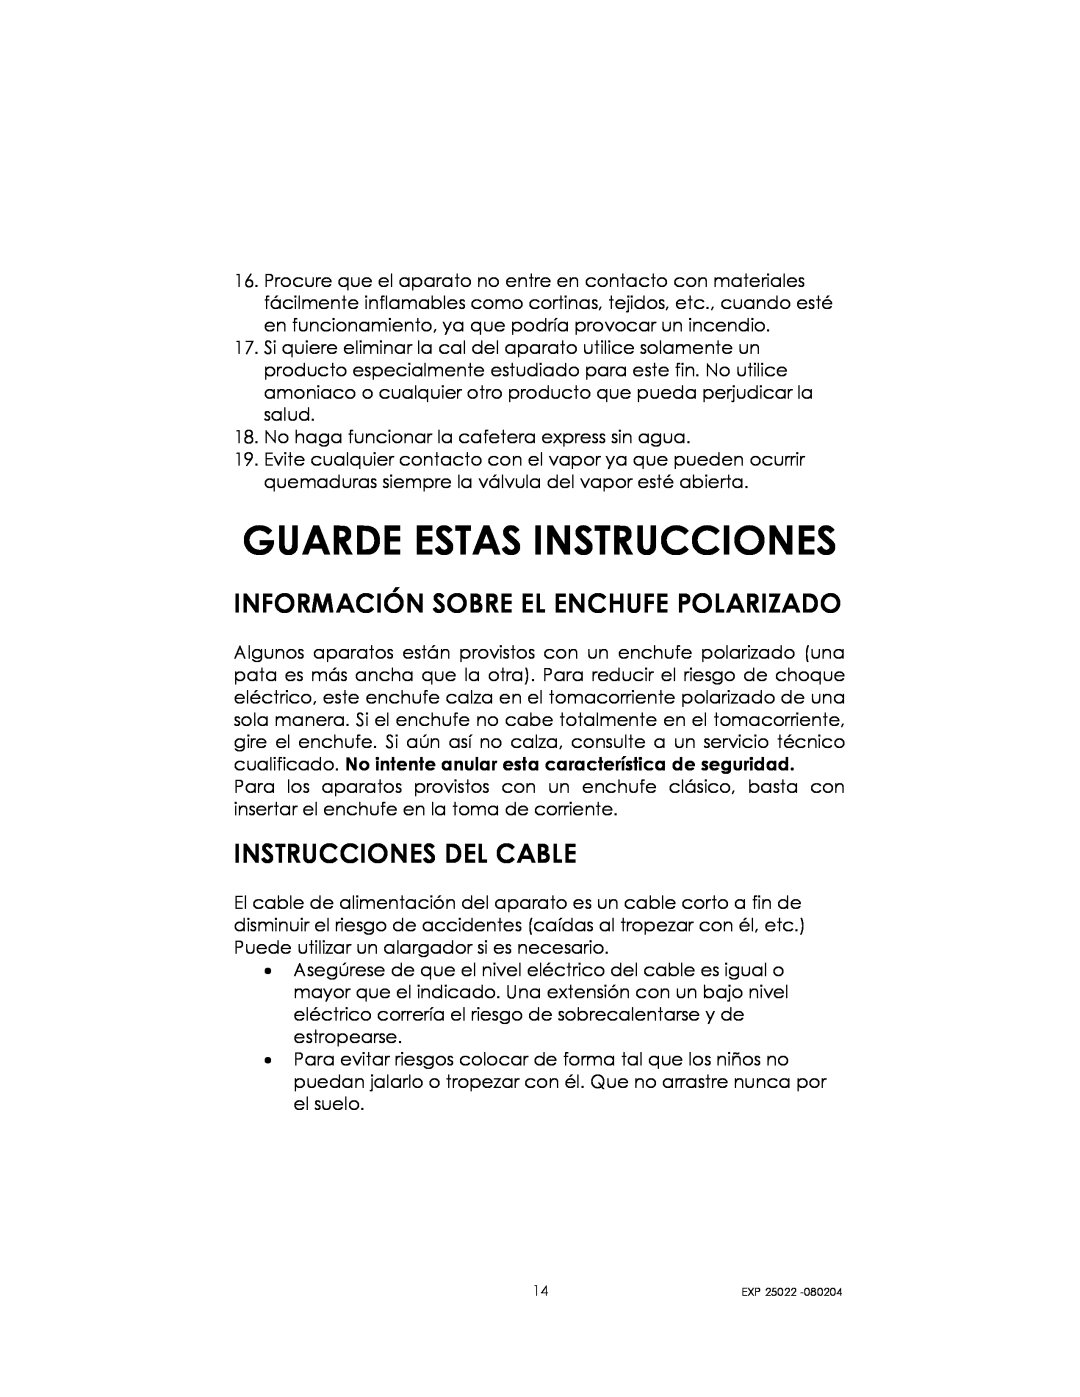 Kalorik EXP 25022 manual Guarde Estas Instrucciones, Información Sobre El Enchufe Polarizado, Instrucciones Del Cable 